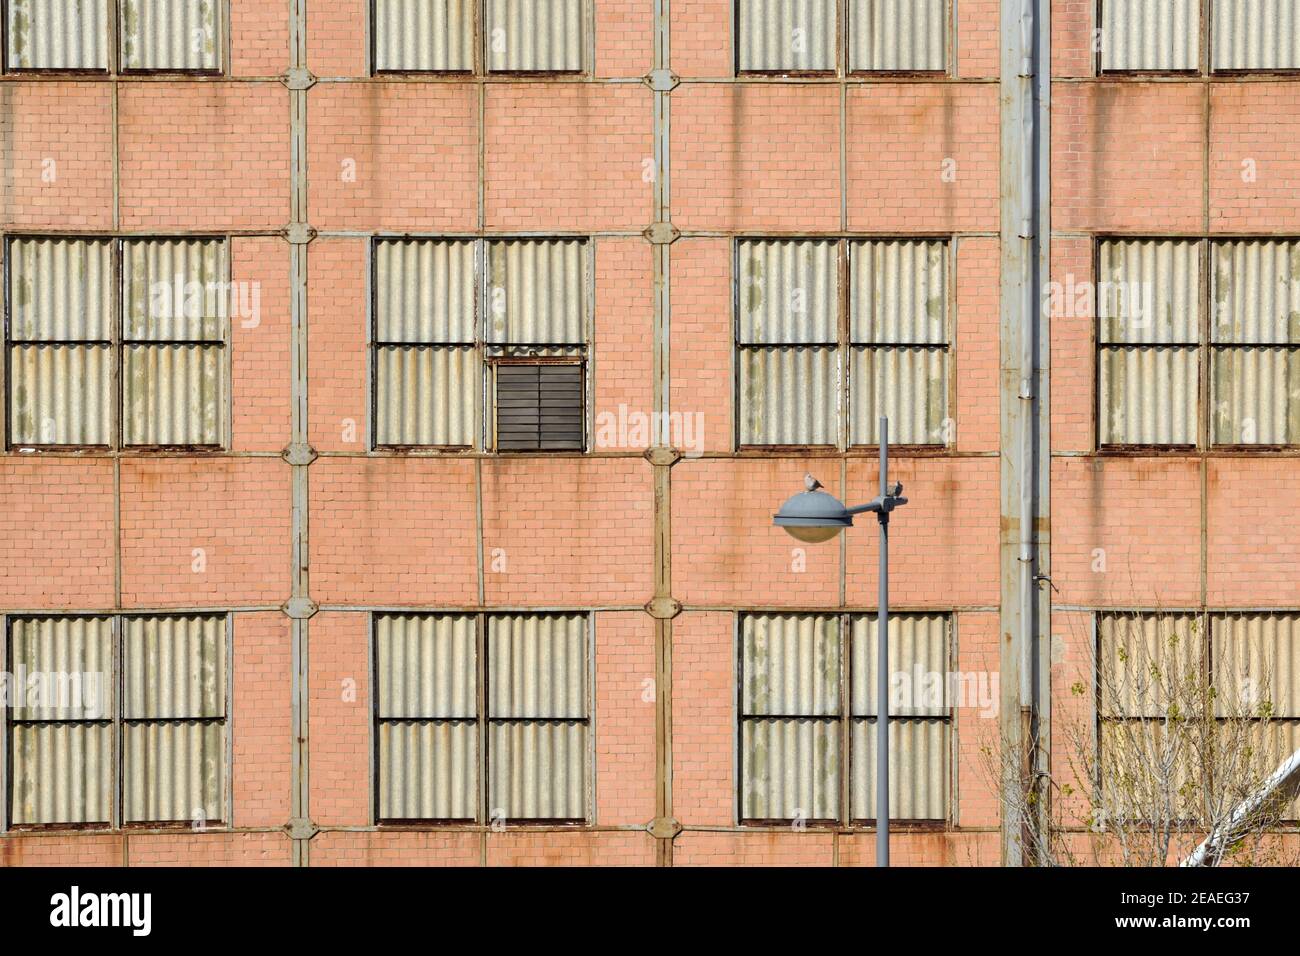 Quadratische Fenster oder Fenster Muster der Brick Industrial Building in Die alten Werften in La Ciotat Bouches-du-Rhone Provence Frankreich Stockfoto